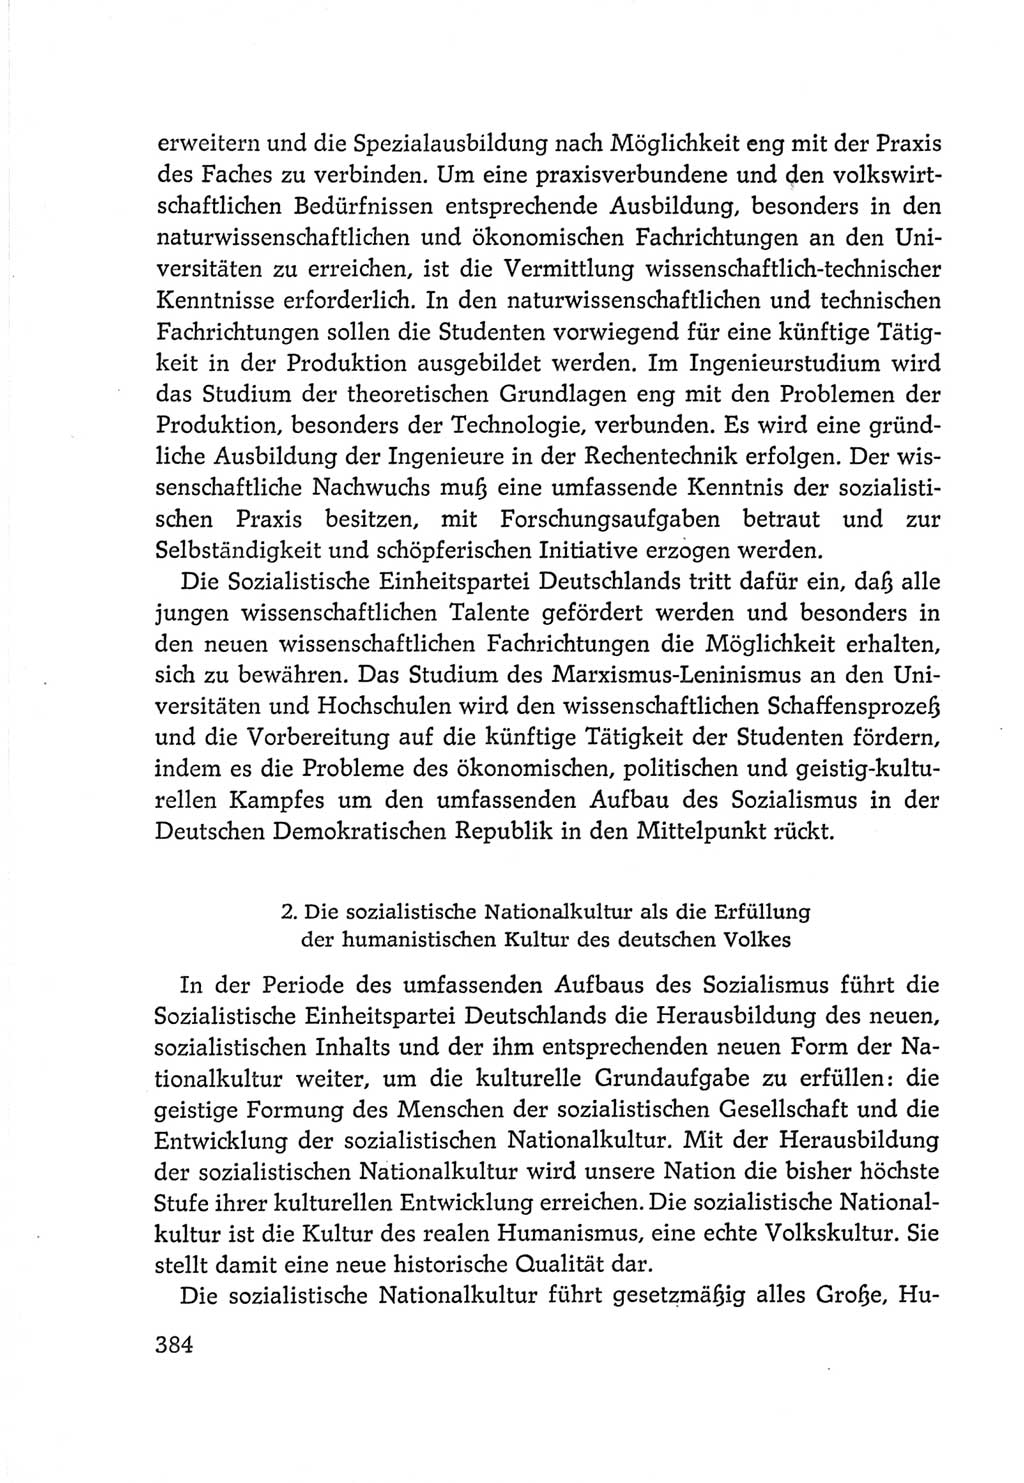 Protokoll der Verhandlungen des Ⅵ. Parteitages der Sozialistischen Einheitspartei Deutschlands (SED) [Deutsche Demokratische Republik (DDR)] 1963, Band Ⅳ, Seite 384 (Prot. Verh. Ⅵ. PT SED DDR 1963, Bd. Ⅳ, S. 384)